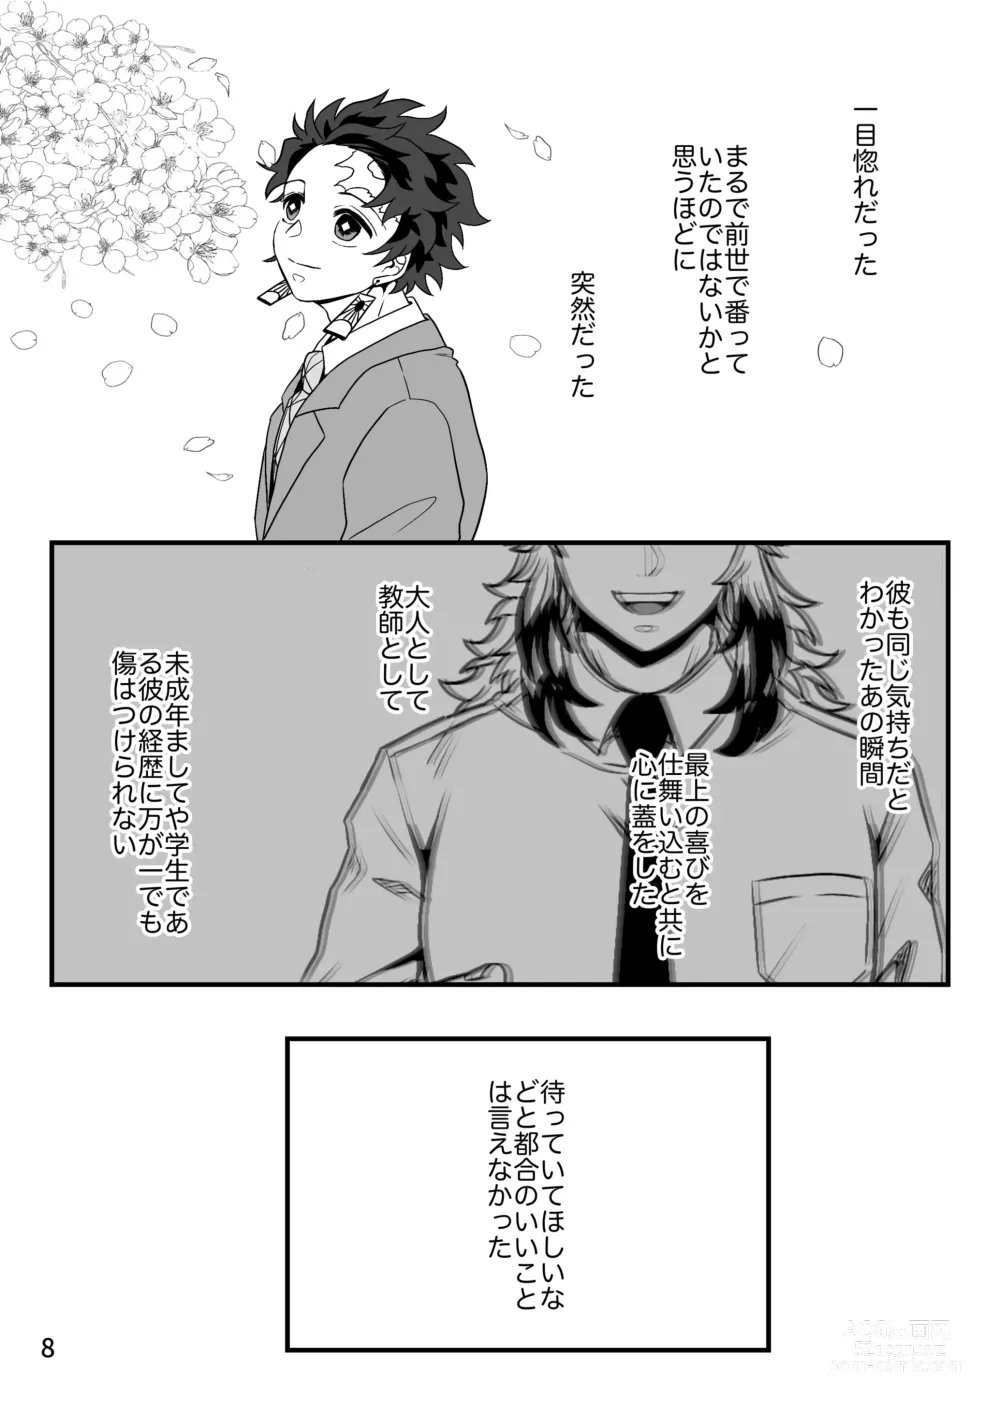 Page 8 of doujinshi Kono Gekijou o Shirazu ni